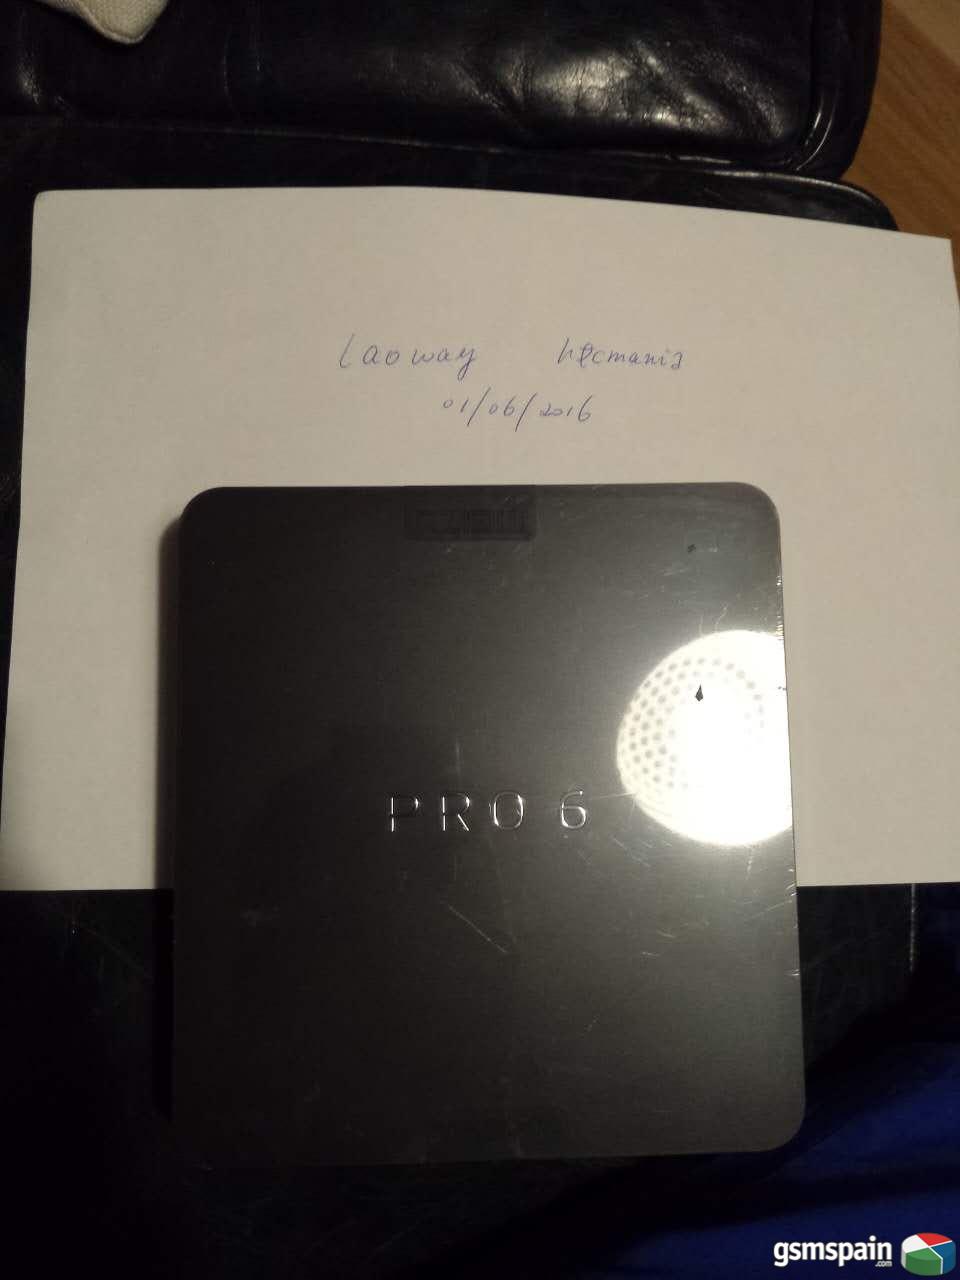 [VENDO] Meizu pro6, negro, 4G Ram+64G memoria, 490 euros